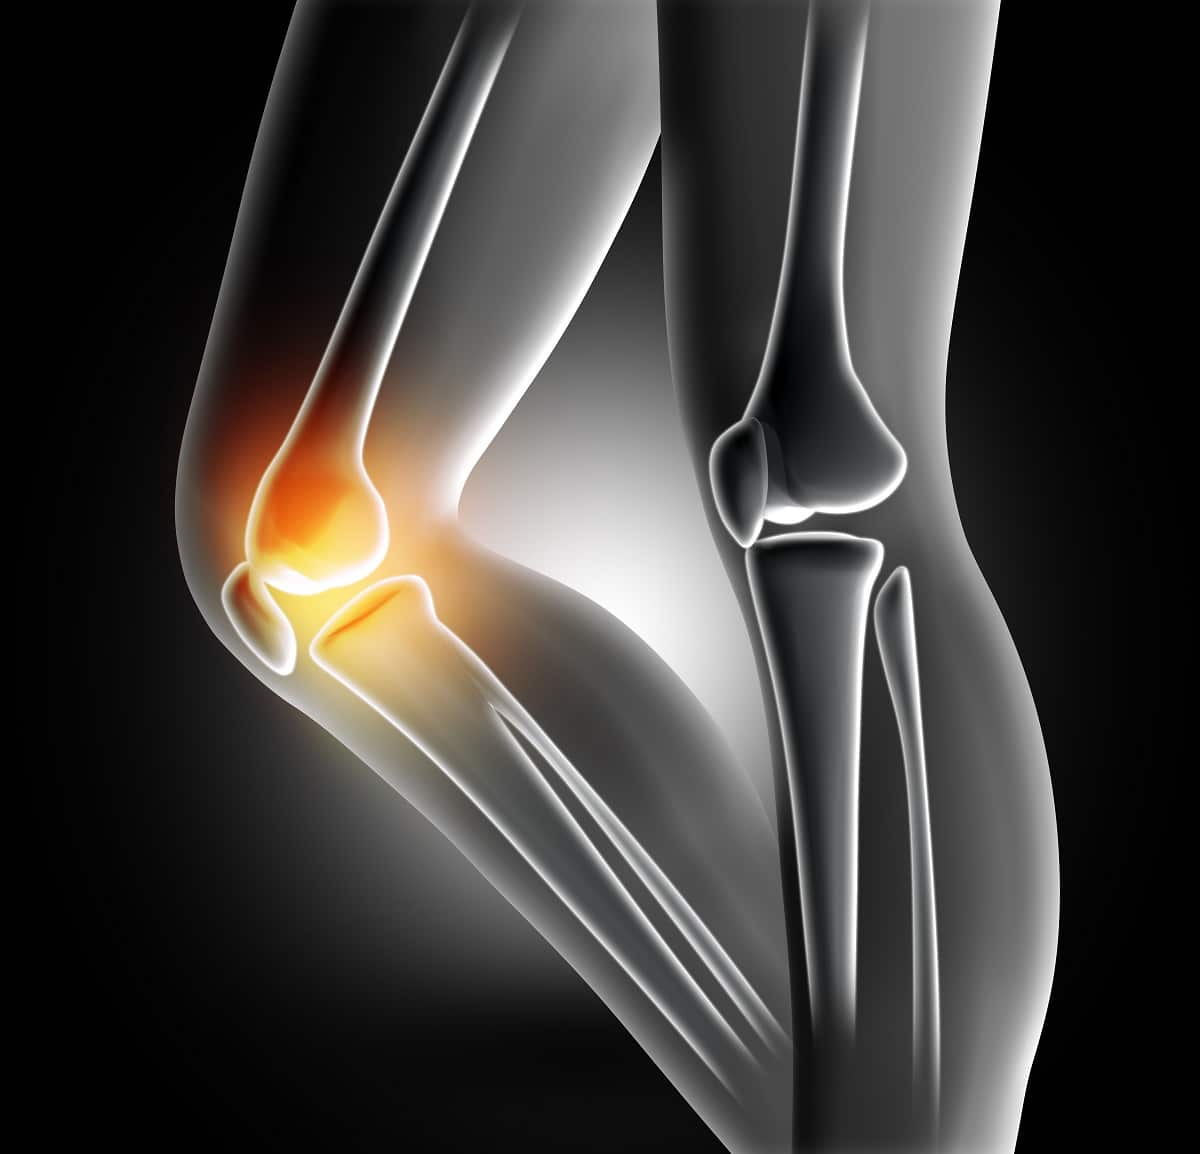 Zbavte se bolesti kolene rychle bez použití chemie